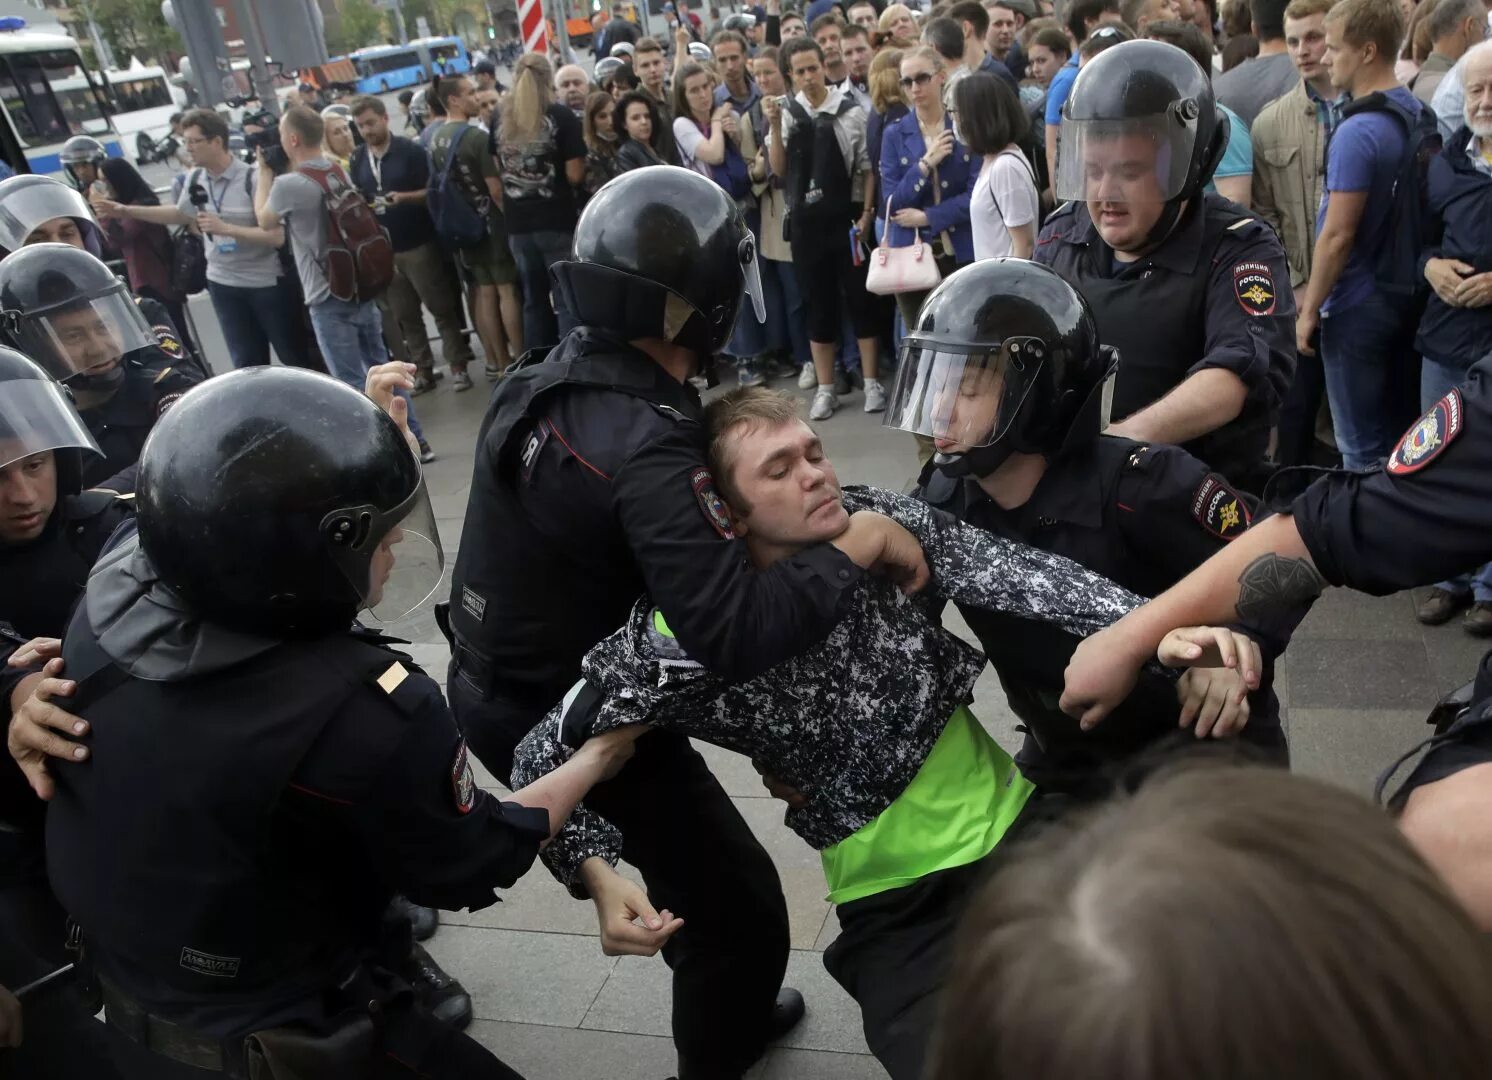 Массовые аресты. Полиция с дубинками на митингах. Полиция избивает дубинками на митинге.